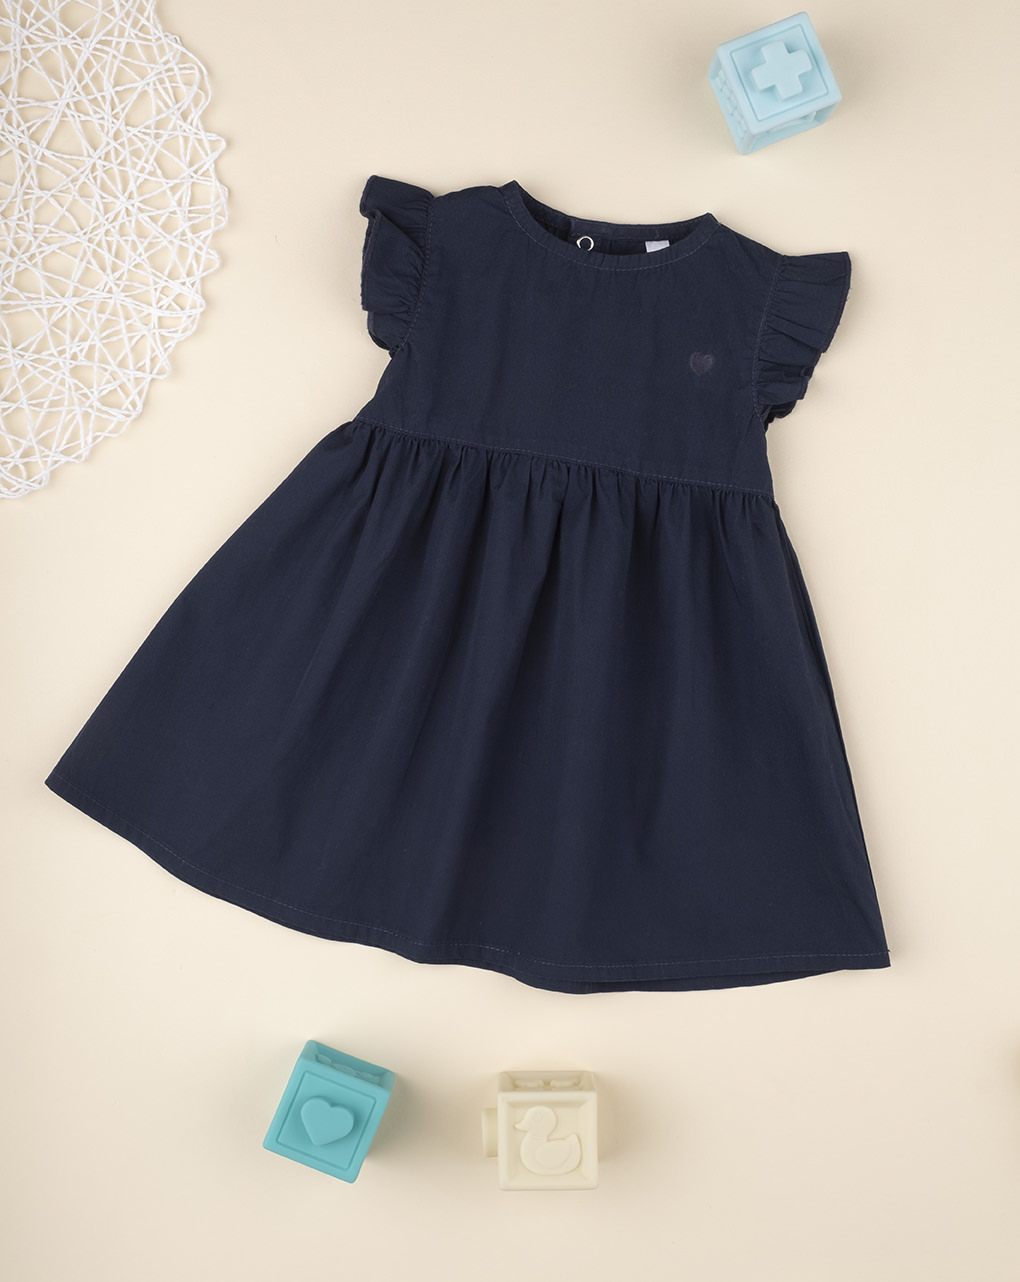 βρεφικό φόρεμα μπλε με καρδούλα για κορίτσι